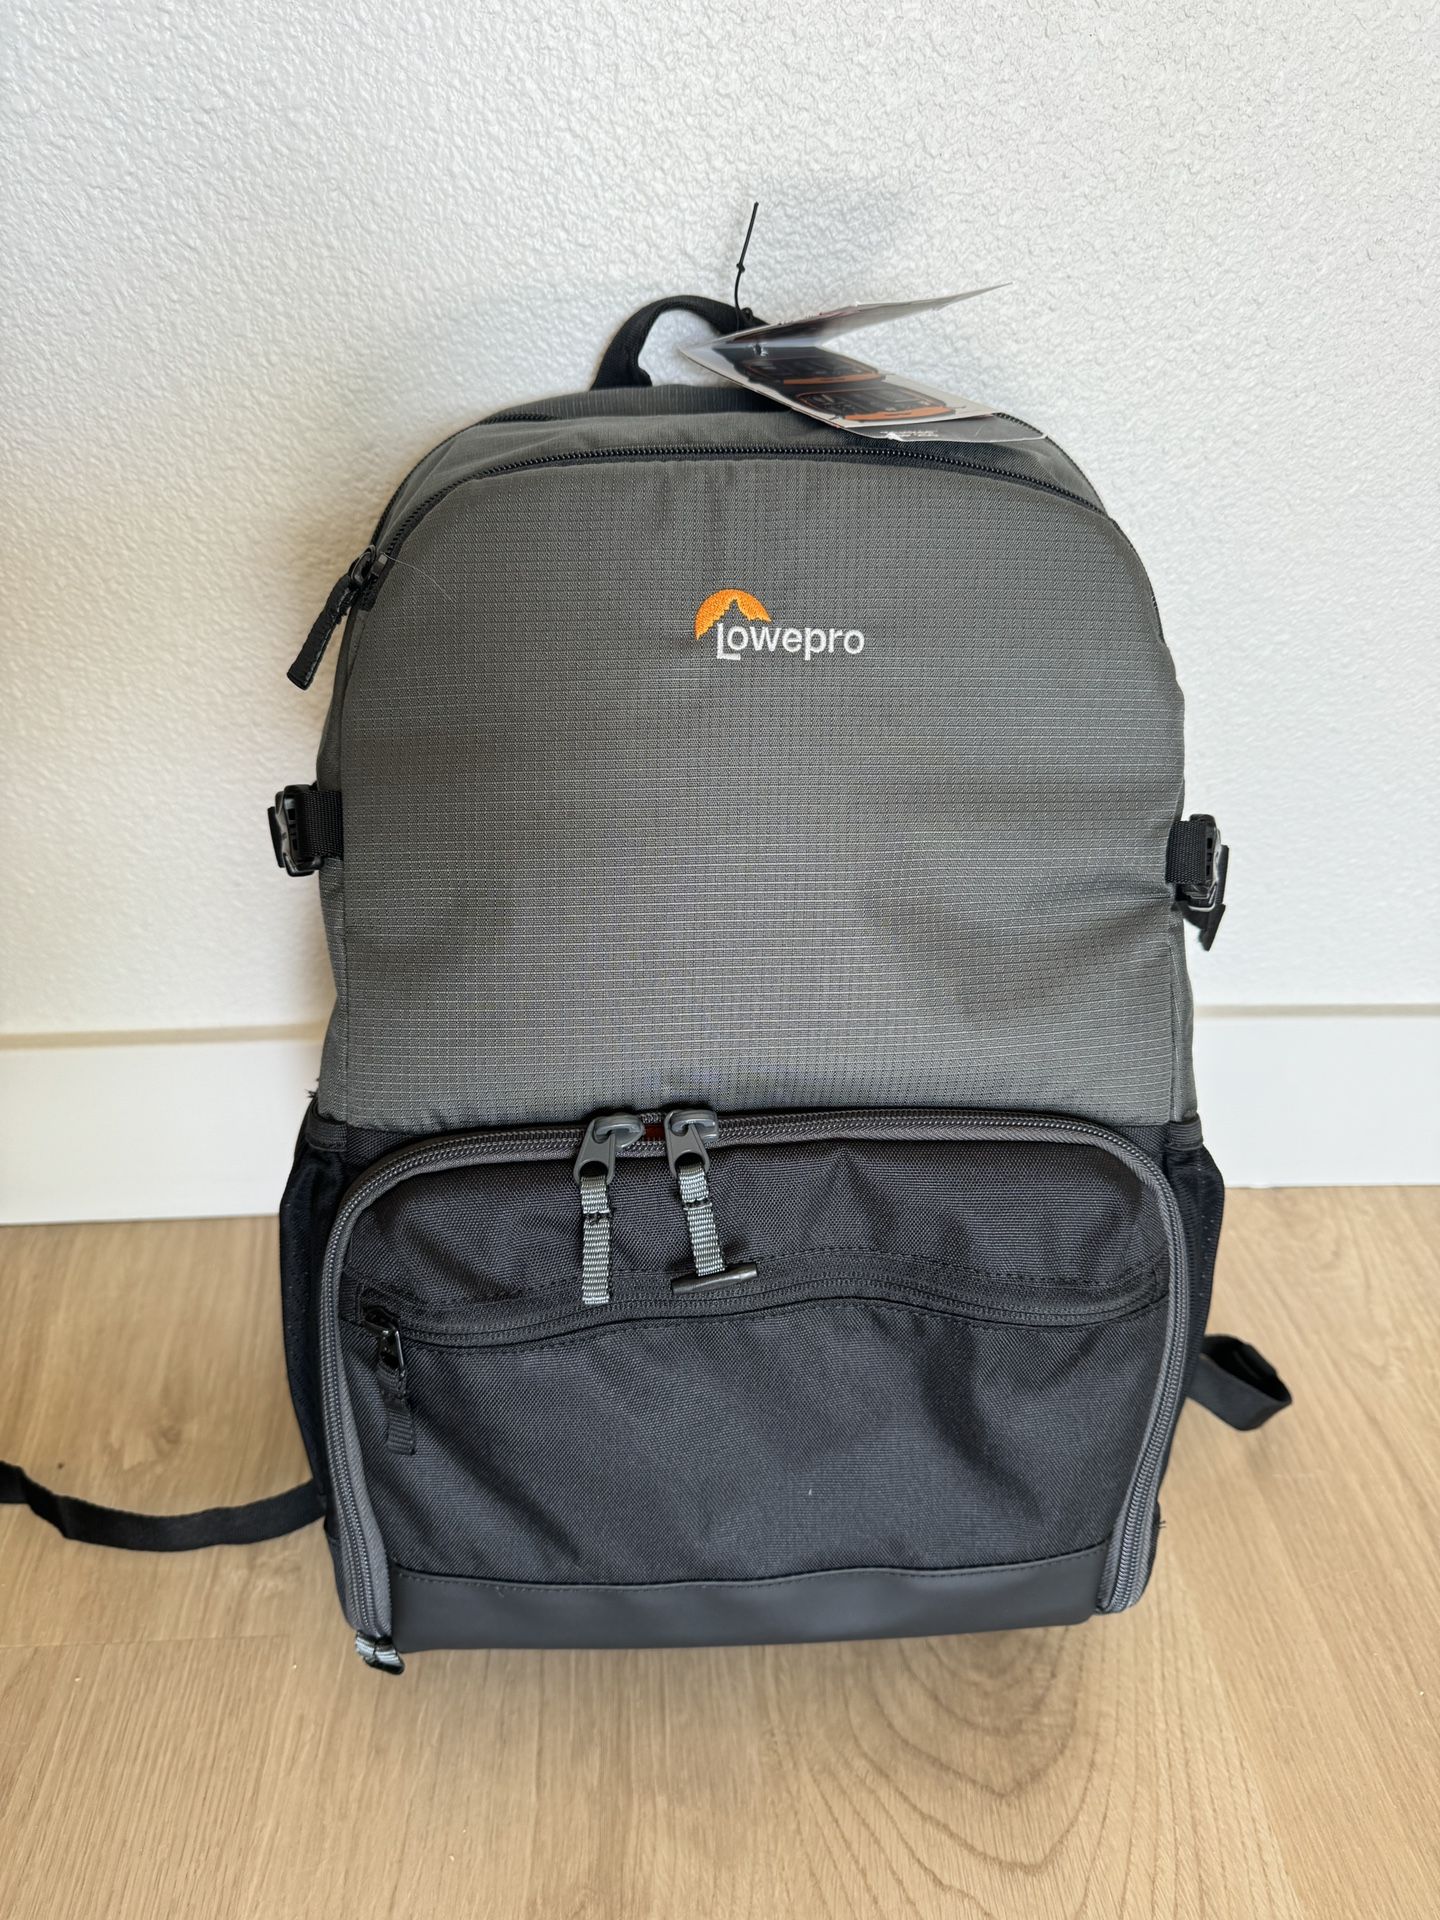 Lowepro’s Truckee BP 250 camera backpack